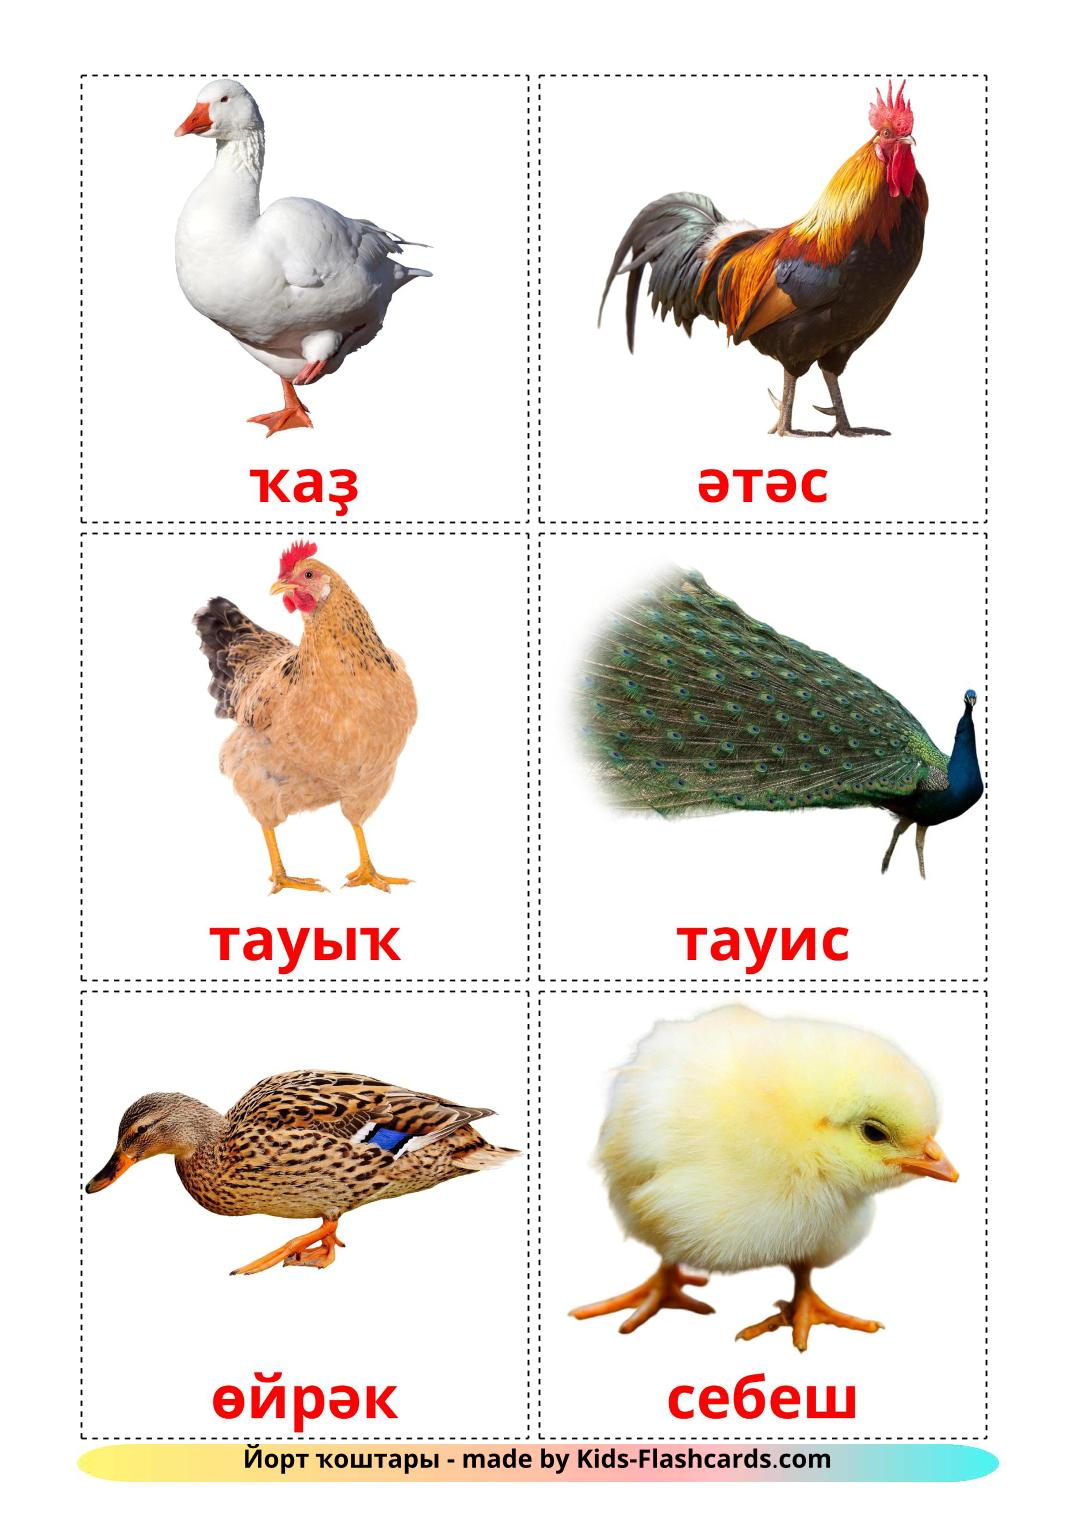 Aves da Quinta - 11 Flashcards bashkires gratuitos para impressão